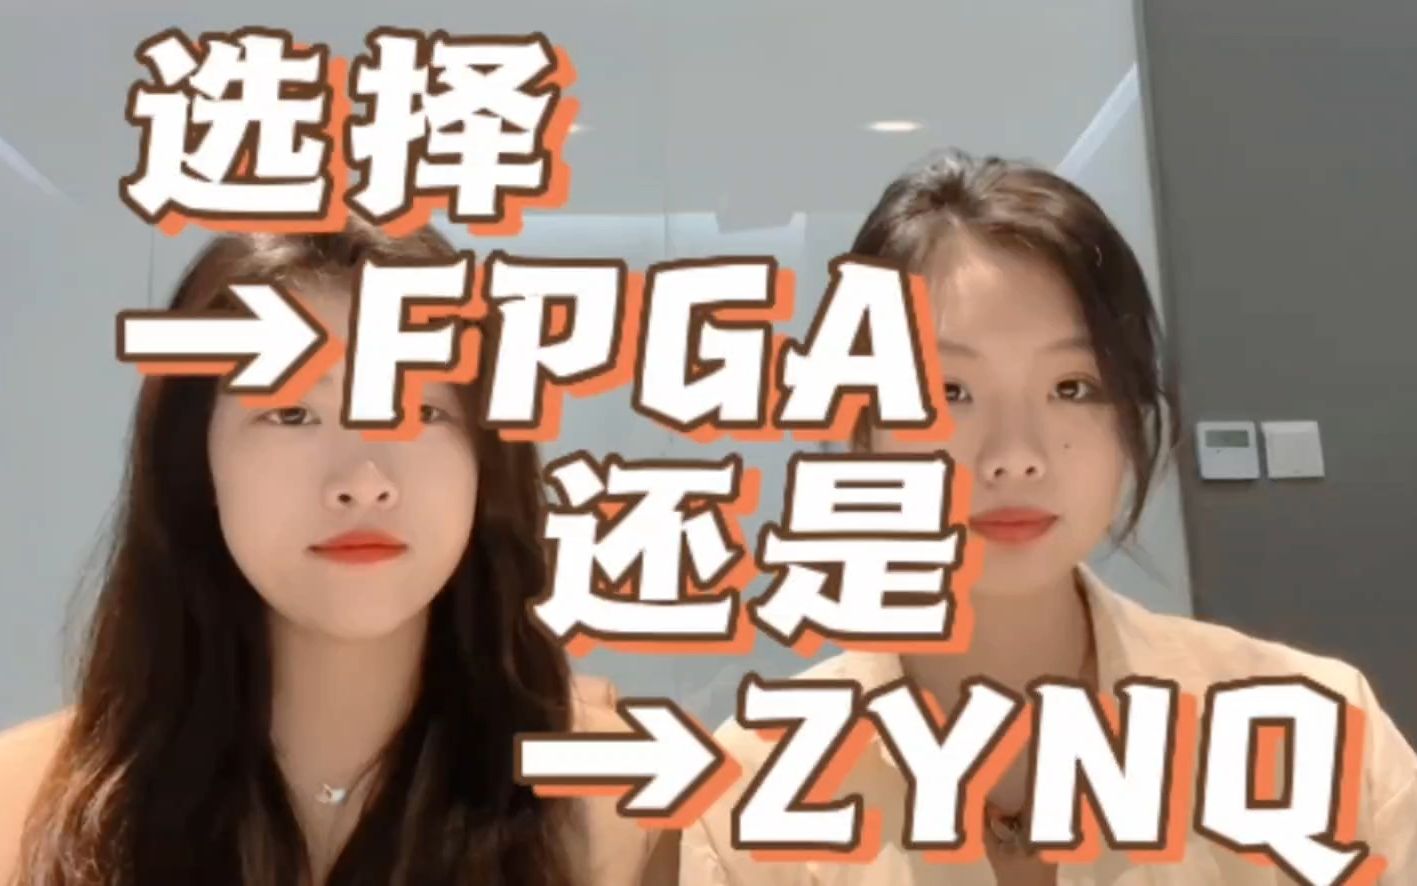 选择FPGA还是ZYNQ